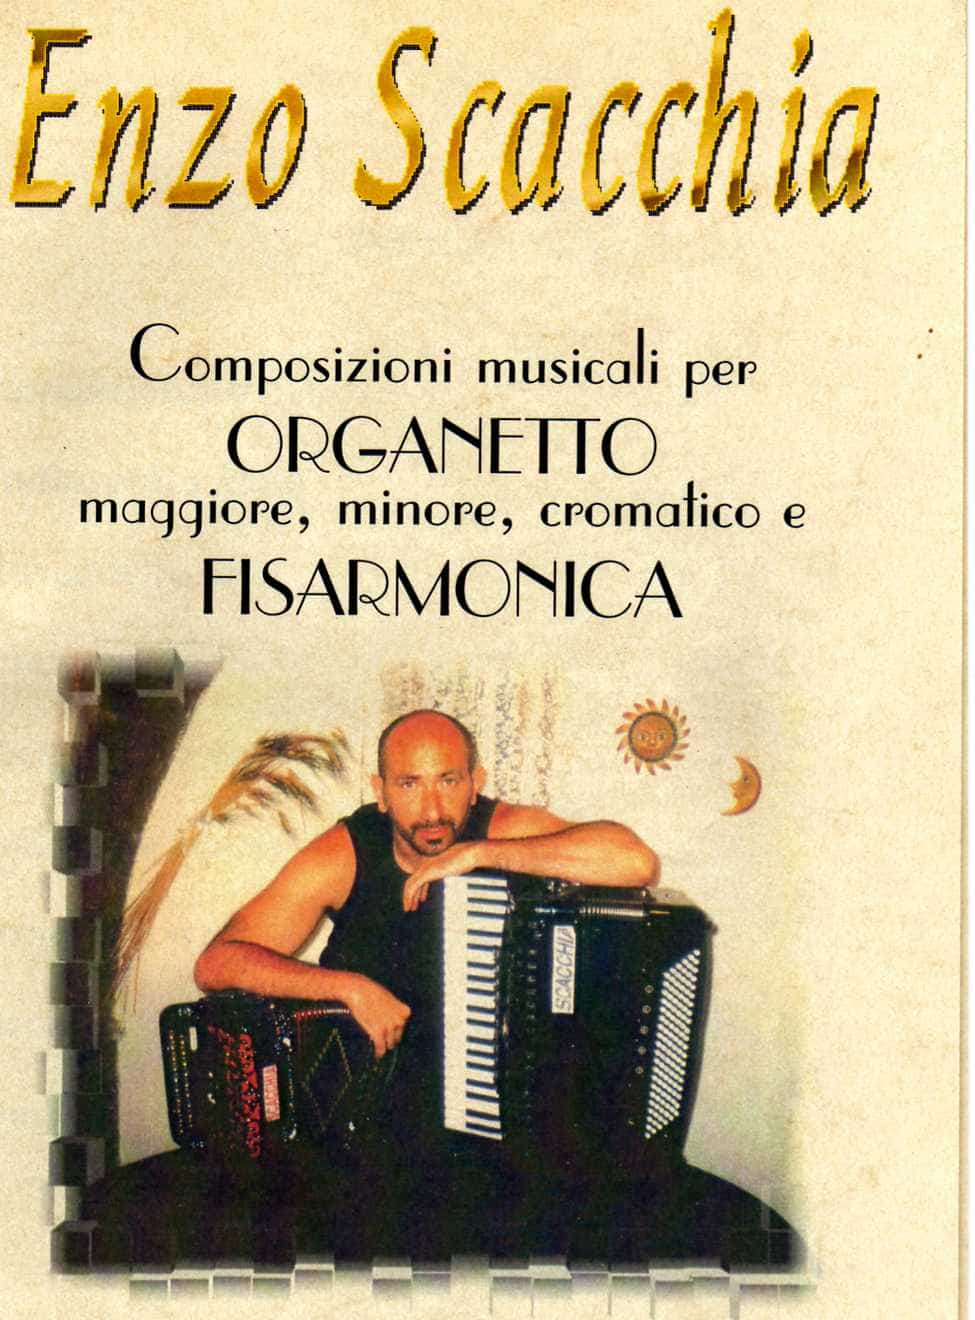 Enzo Scacchia, organetto, il Re dell'organetto, campione del mondo di organetto